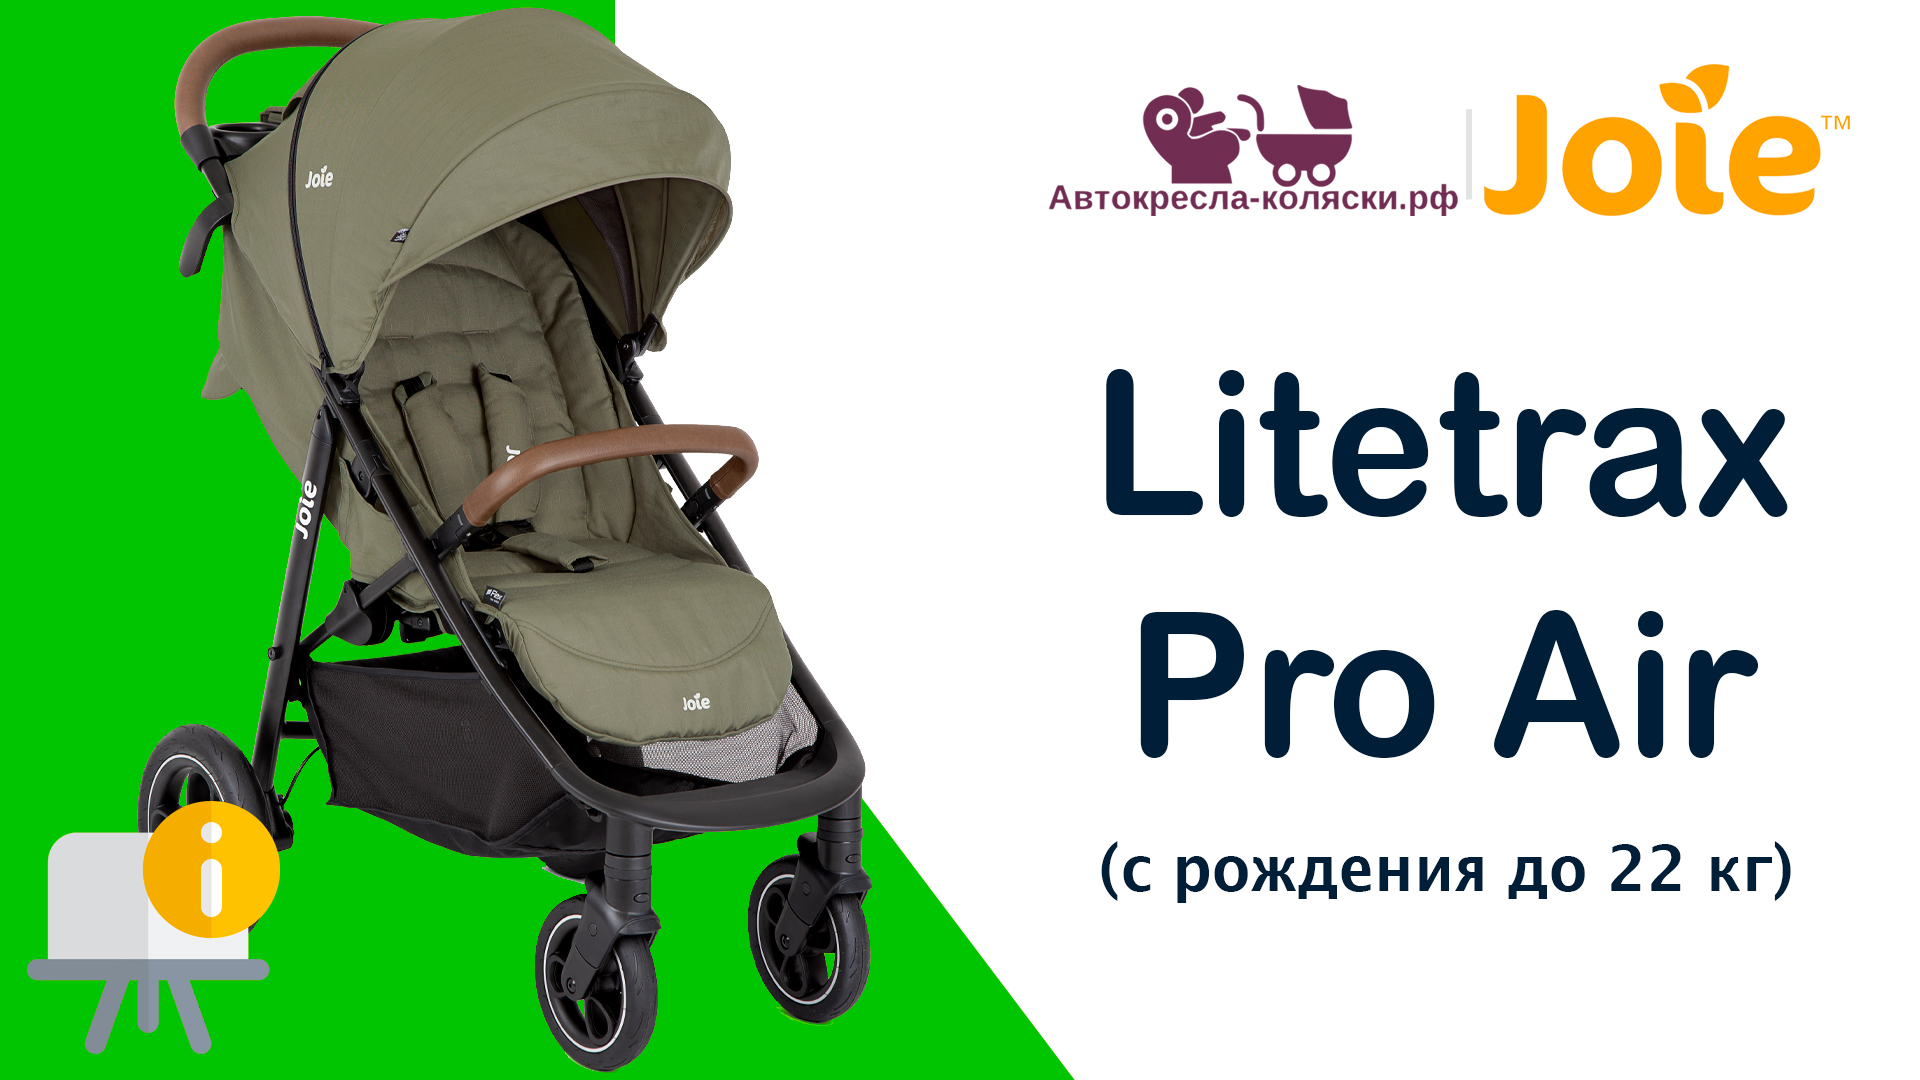 Joie Litetrax Pro Air™  |  ОБЗОР легкой прогулочной коляски с рождения до 4-х лет (до 22 кг).